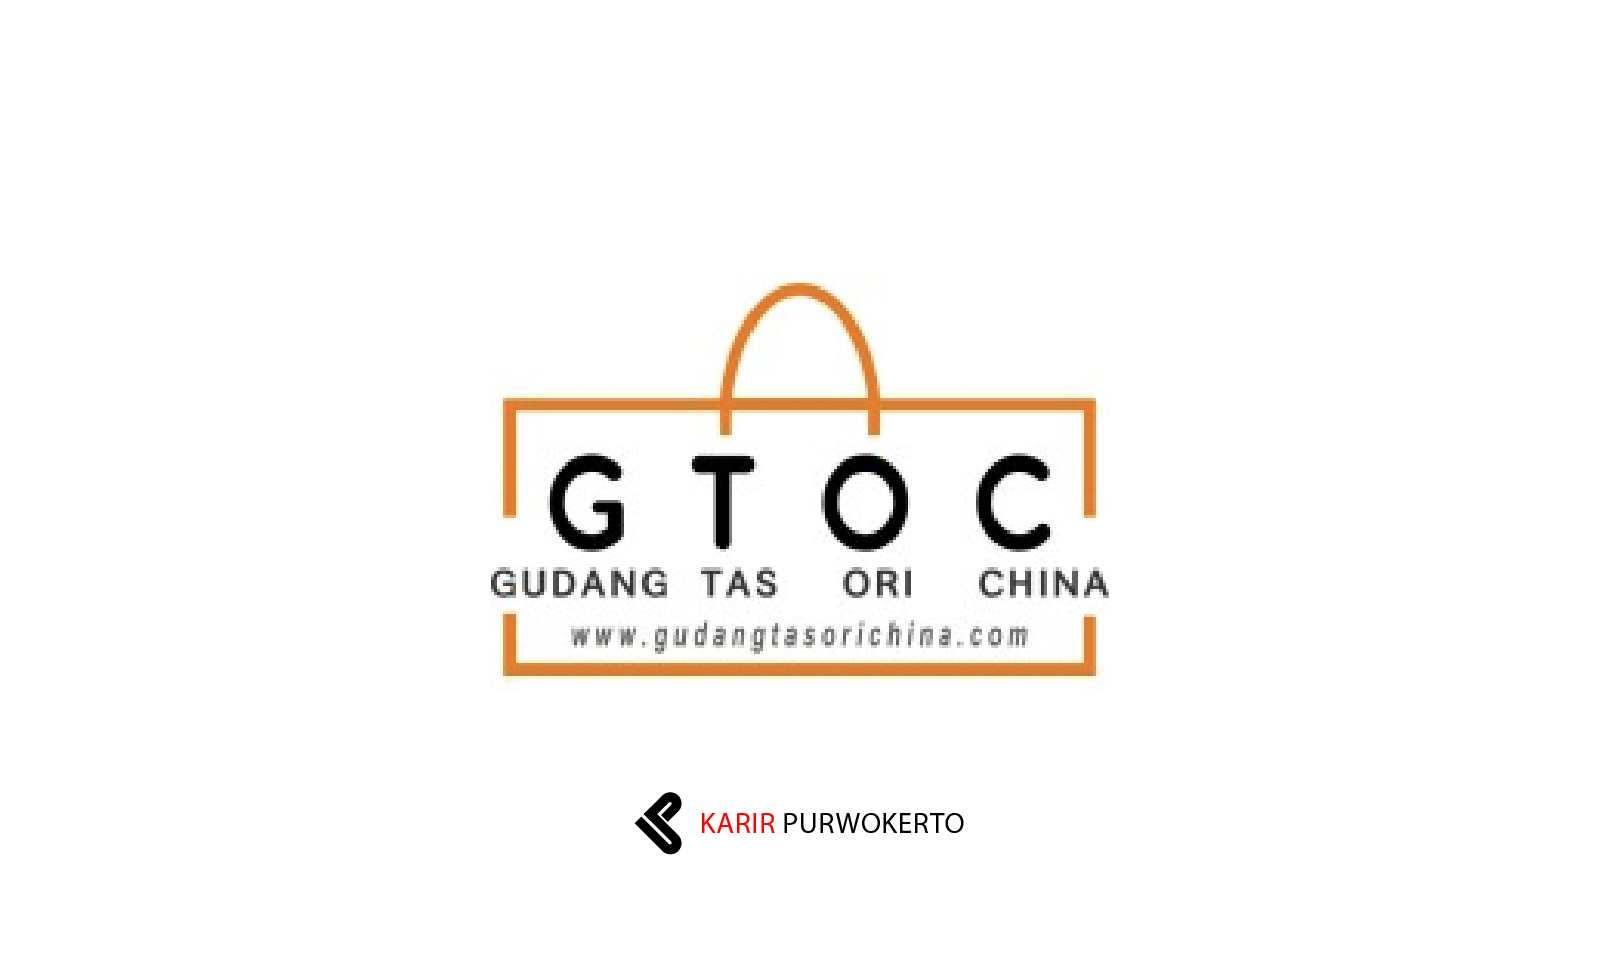 Lowongan Kerja Gudang Tas Ori Cina (GTOC)